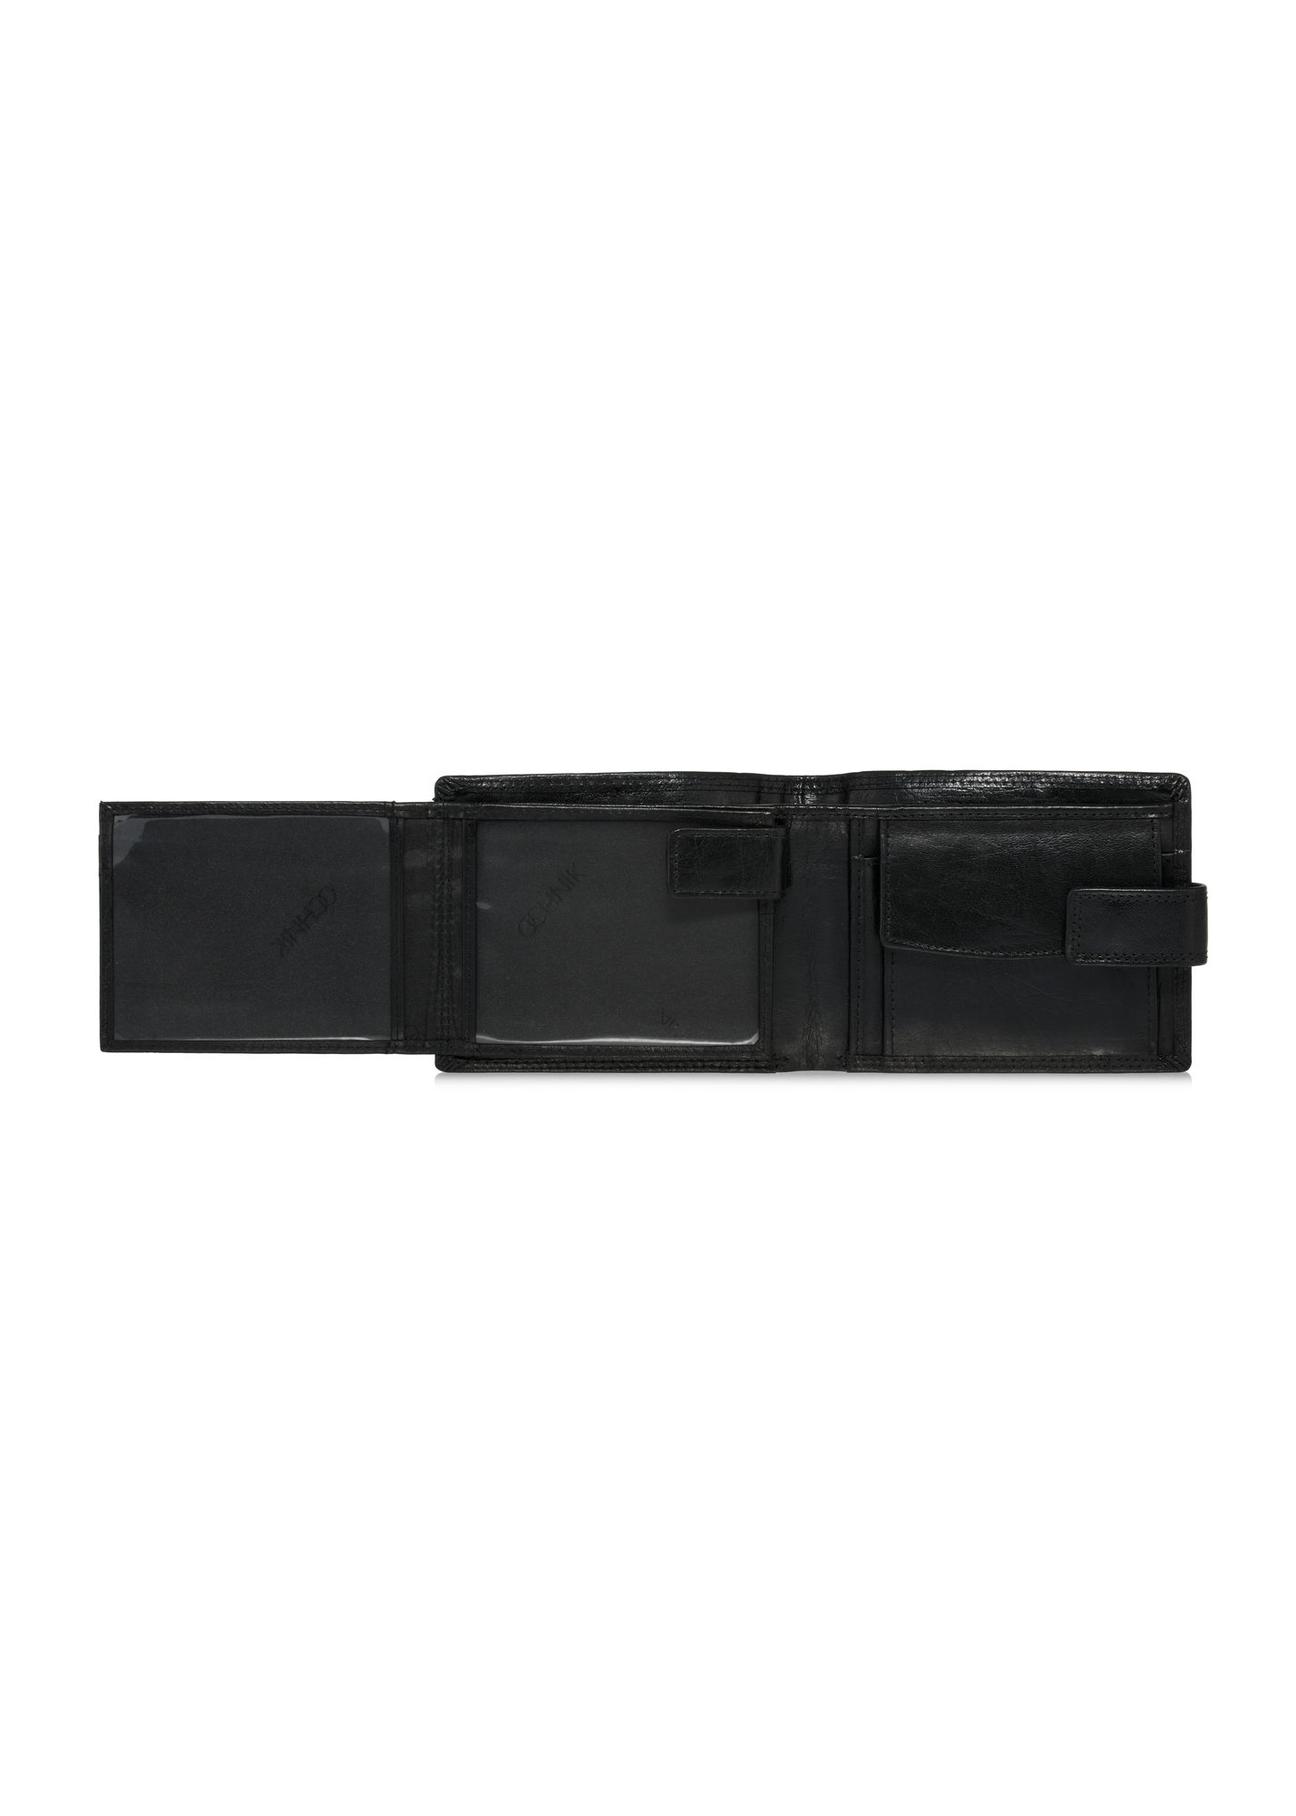 Skórzany zapinany czarny portfel męski PORMS-0553-99(W24)